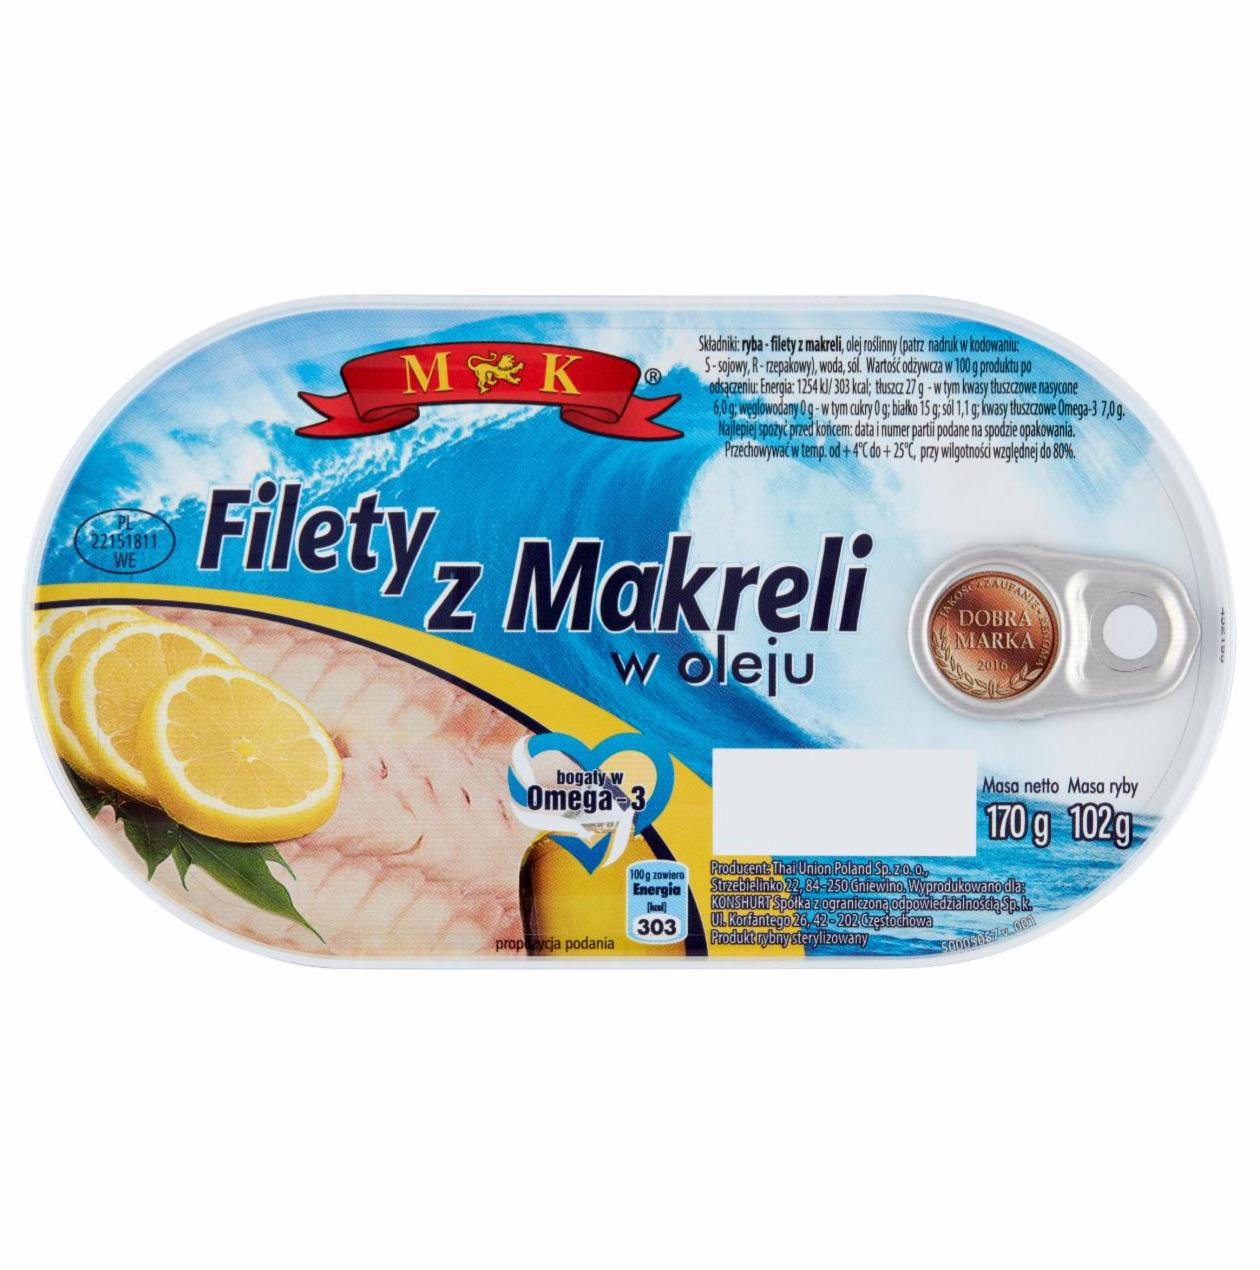 Zdjęcia - Filety z makreli w oleju MK